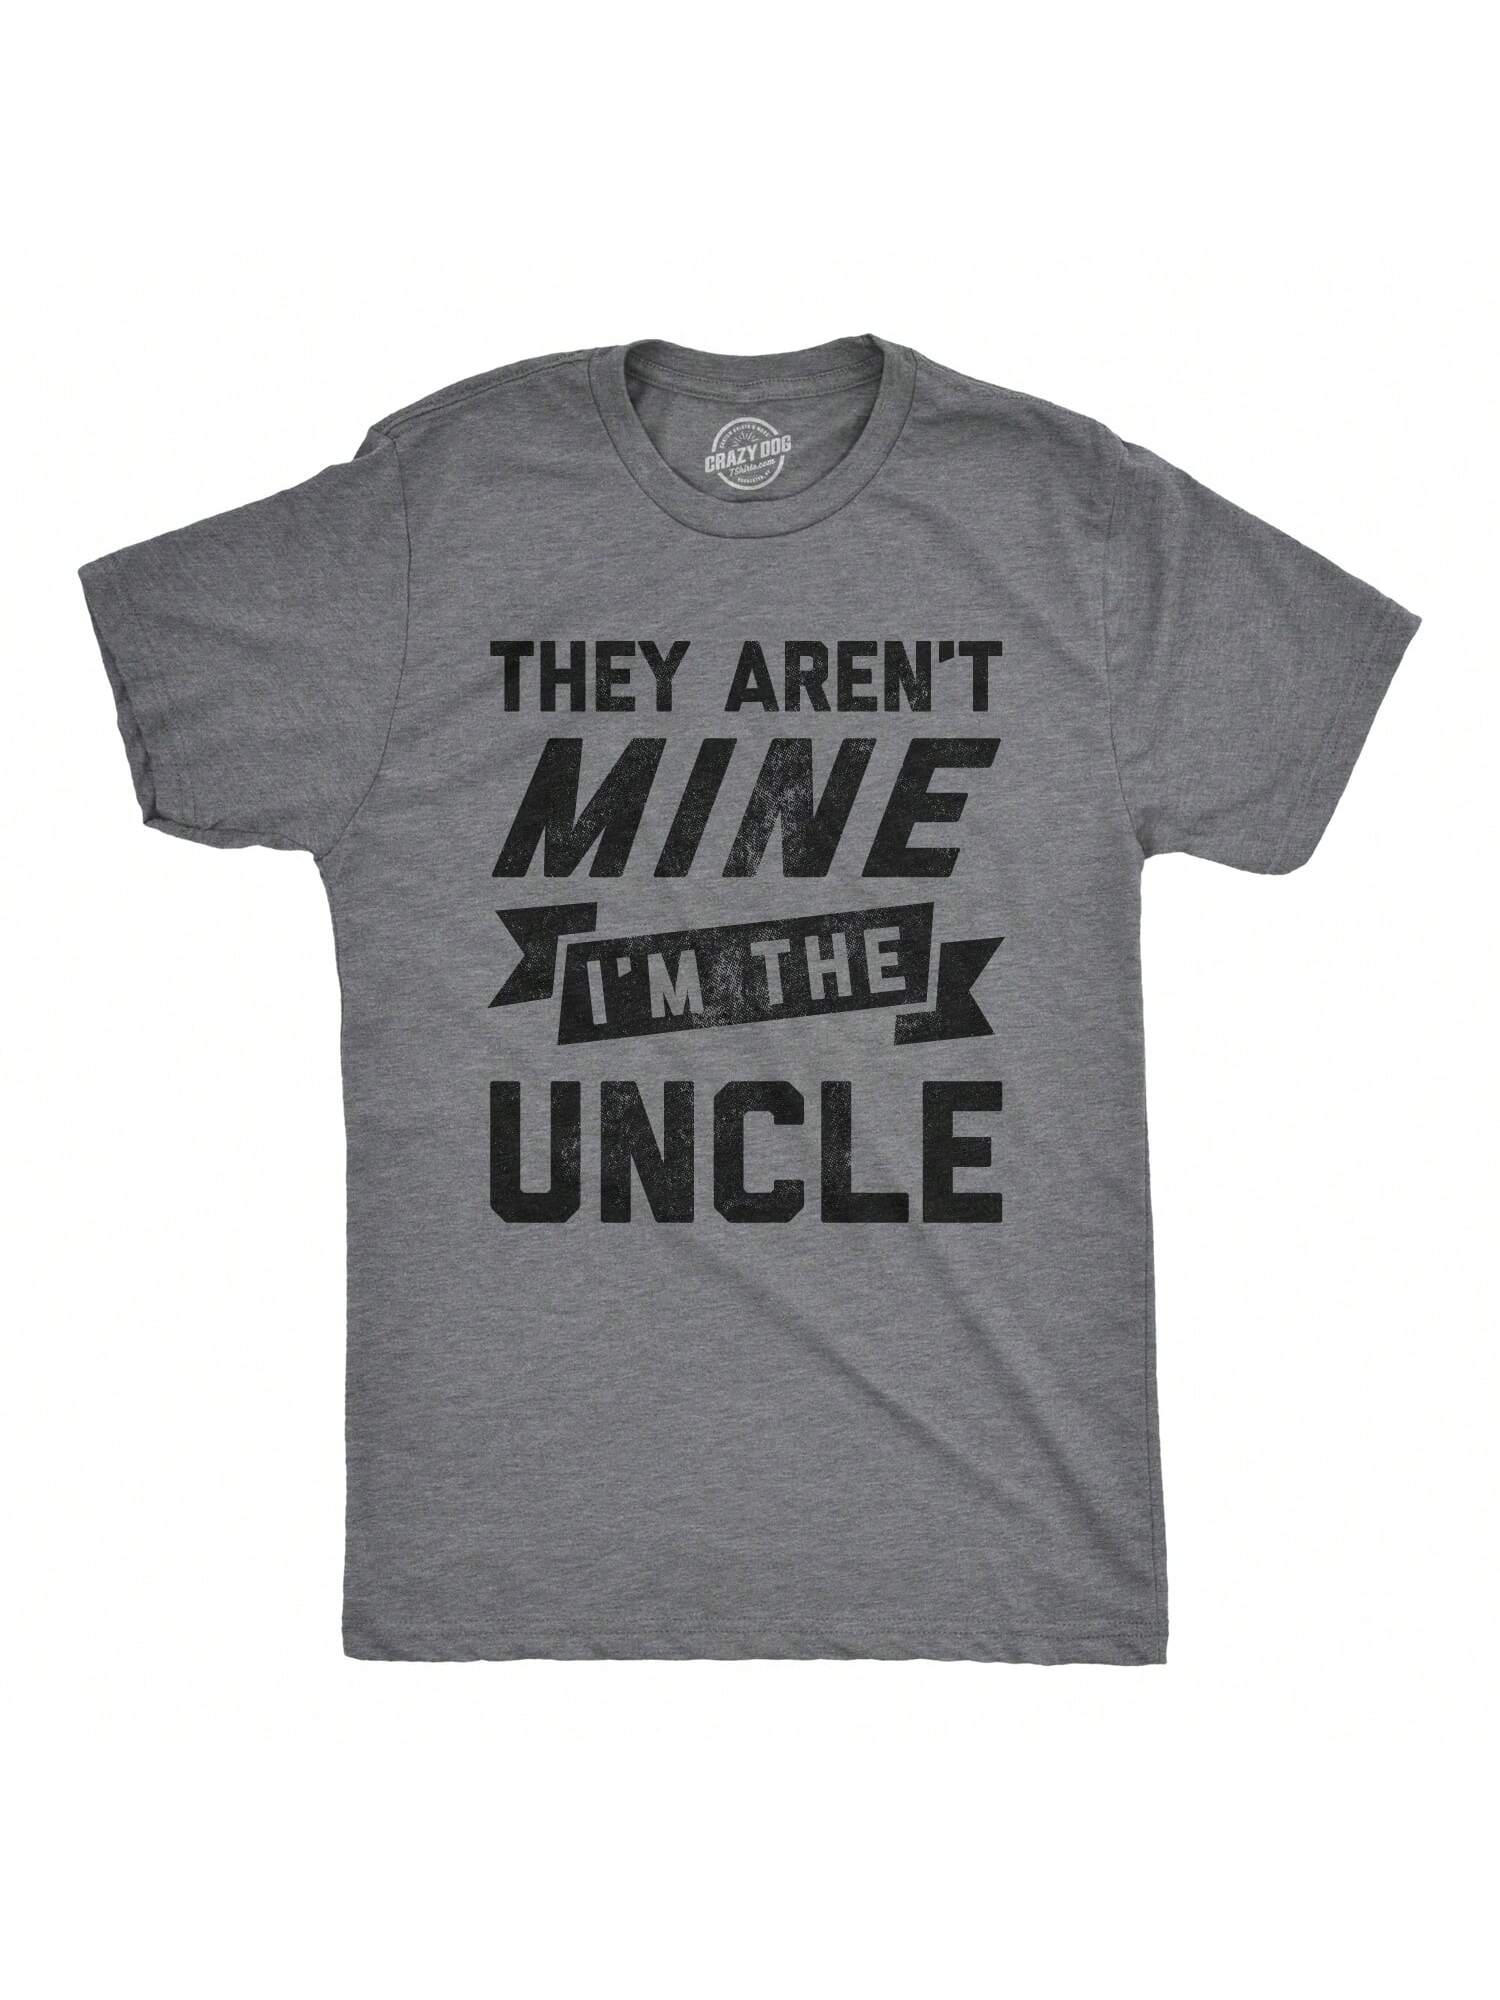 Мужская футболка «Они не мои» «Я дядя», темный хизер грей - они не мои футболка с принтом злого поршня новая забавная футболка мужская забавная футболка мужская одежда с коротким рукавом бренд одежды